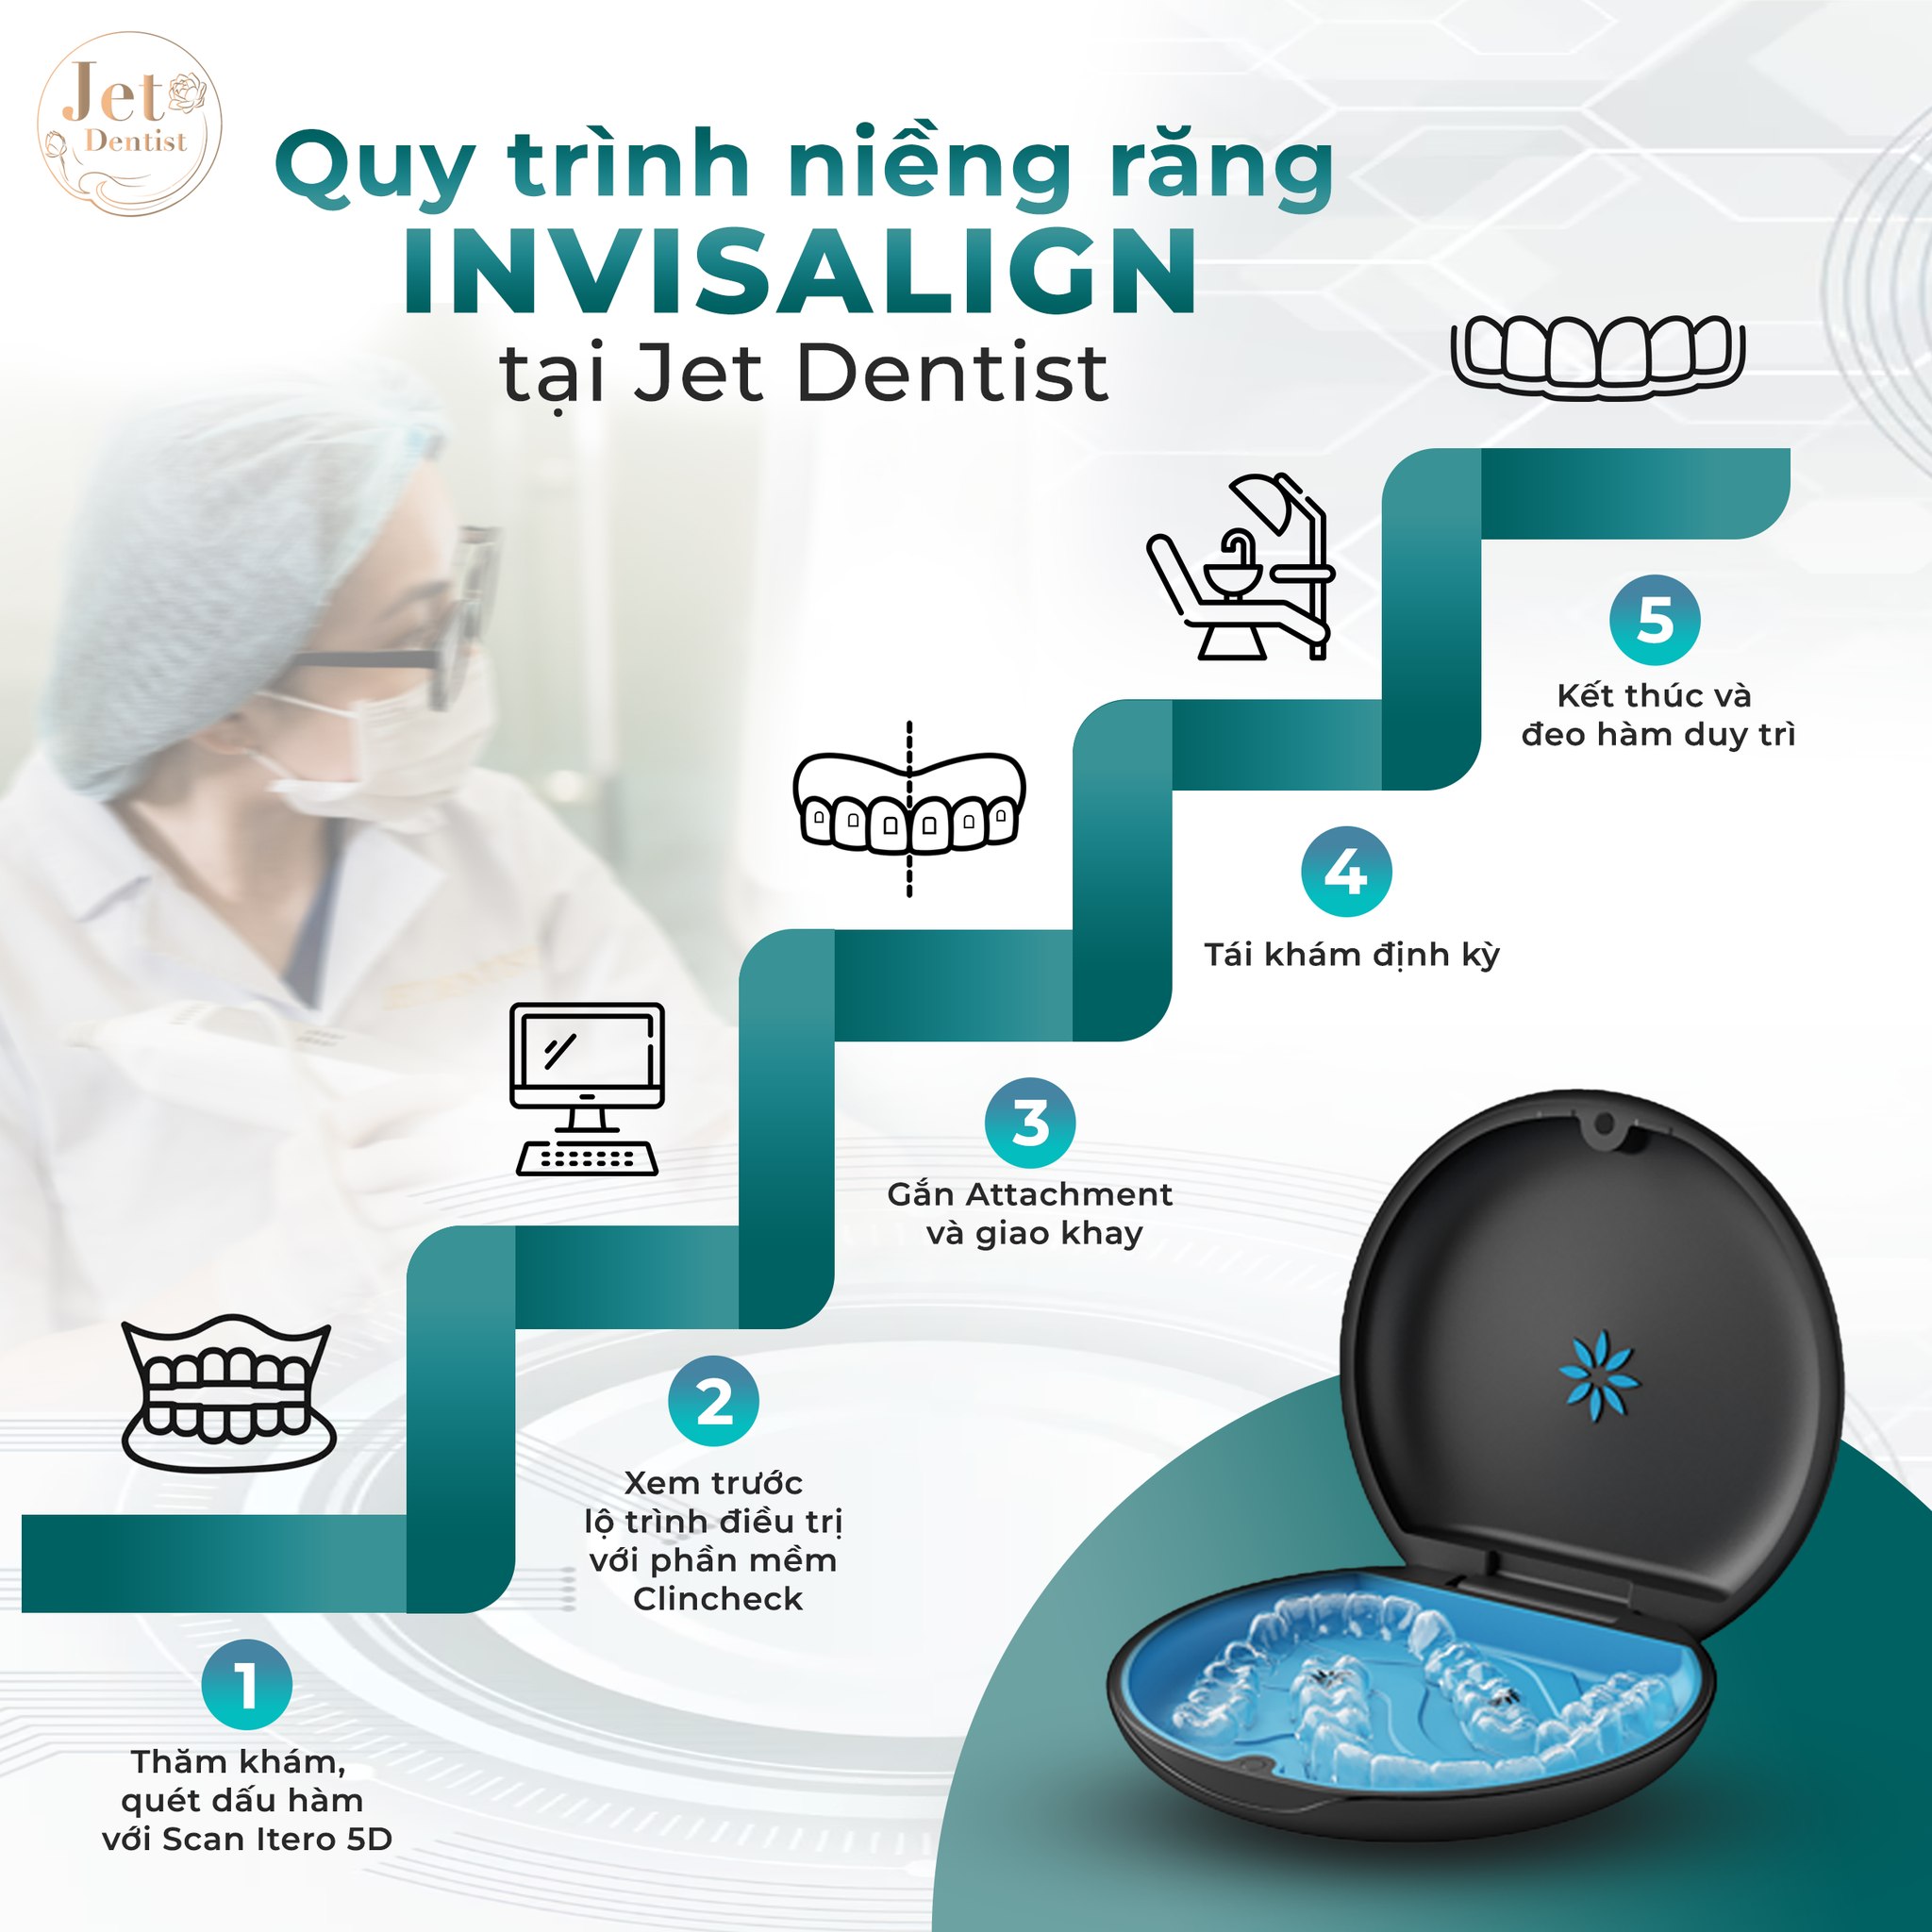 Quy trình chỉnh nha Invisalign tại Jet Dentist